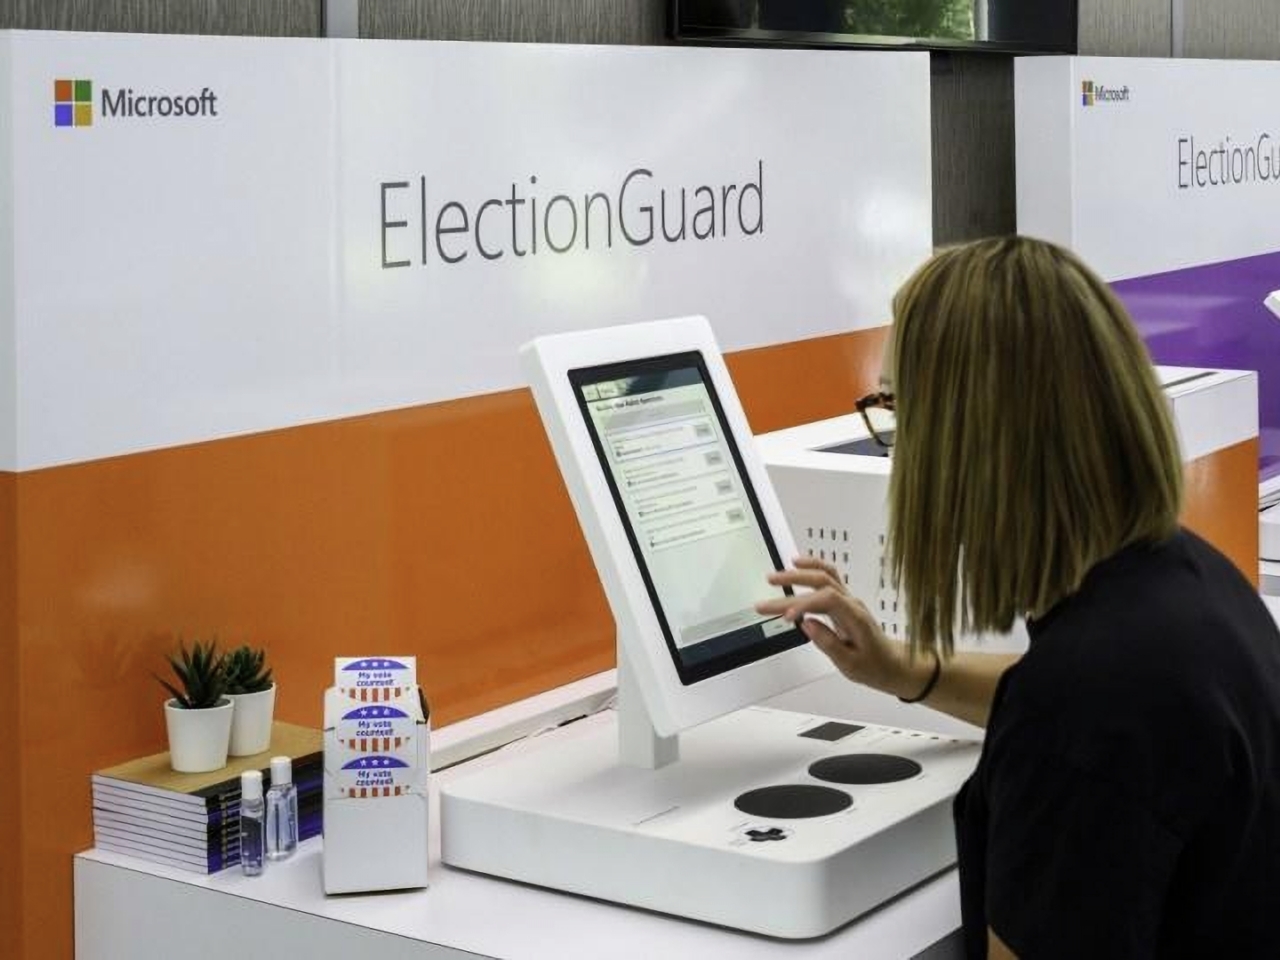 セキュアな選挙実現へ--初の実地テストが行われたマイクロソフトの「ElectionGuard」